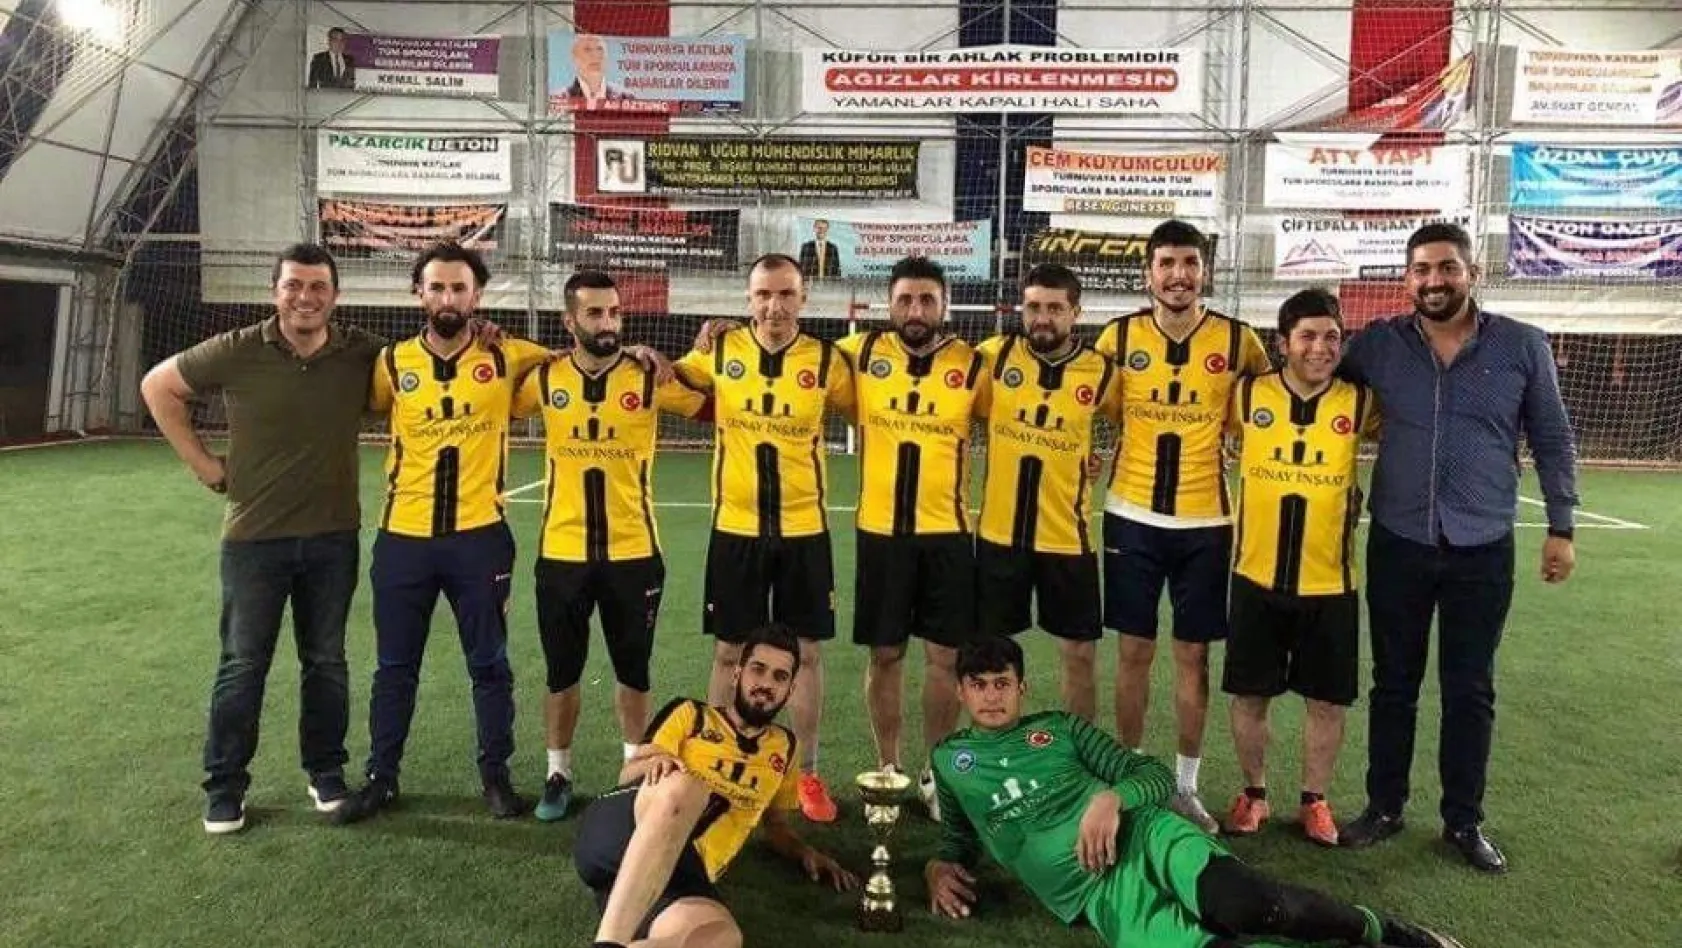 Pazarcık'taki turnuvada Küçükbağspor şampiyon oldu
